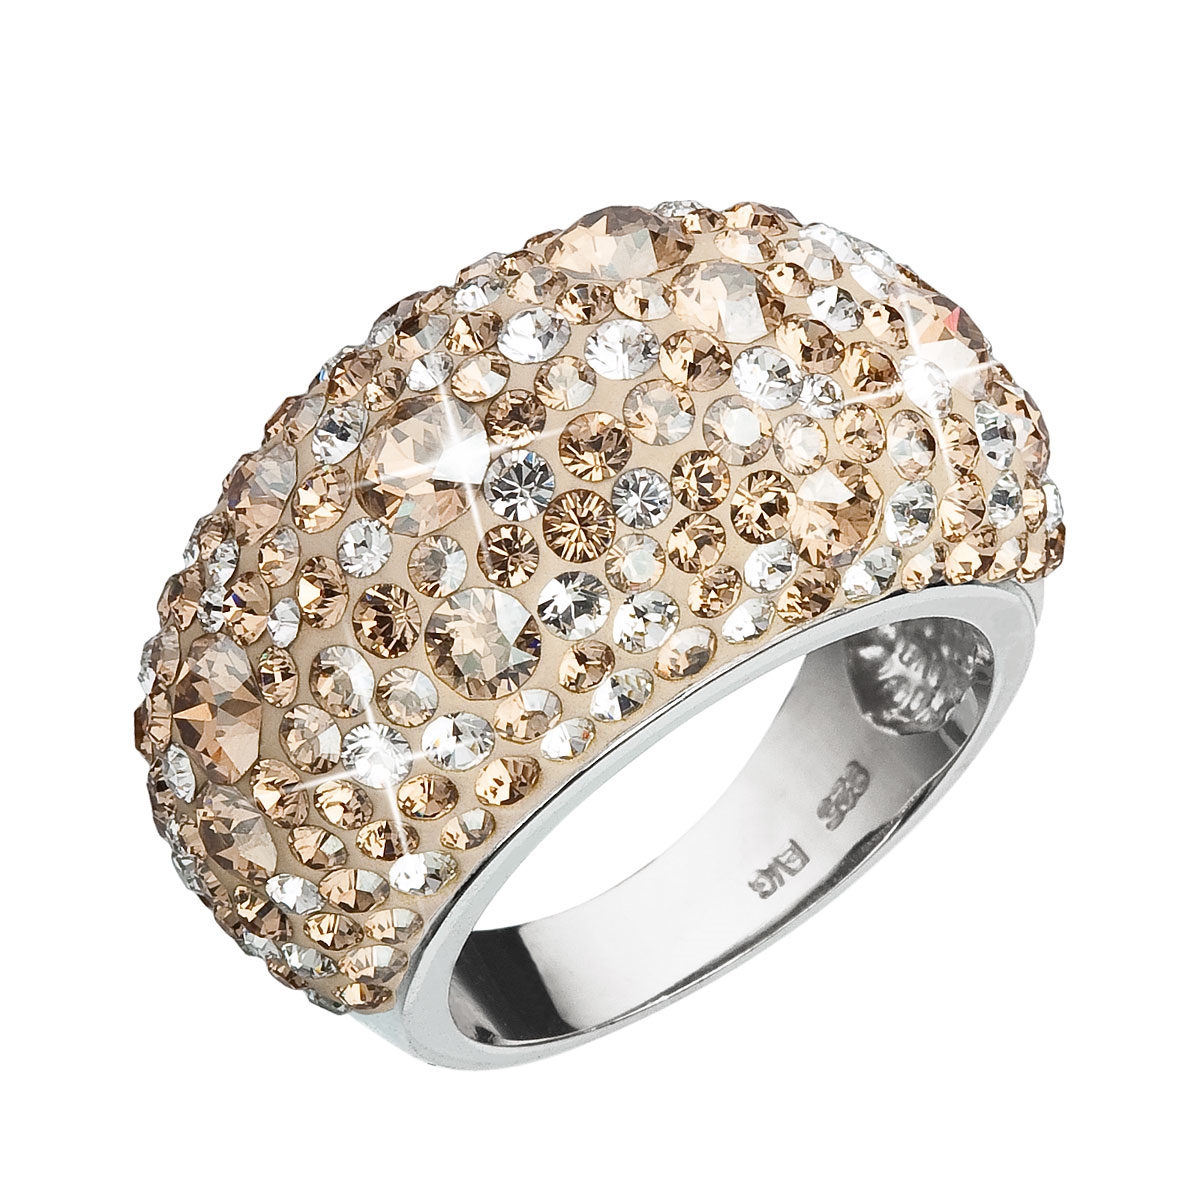 Strieborný prsteň s kryštálmi Crystals from Swarovski ®, Gold